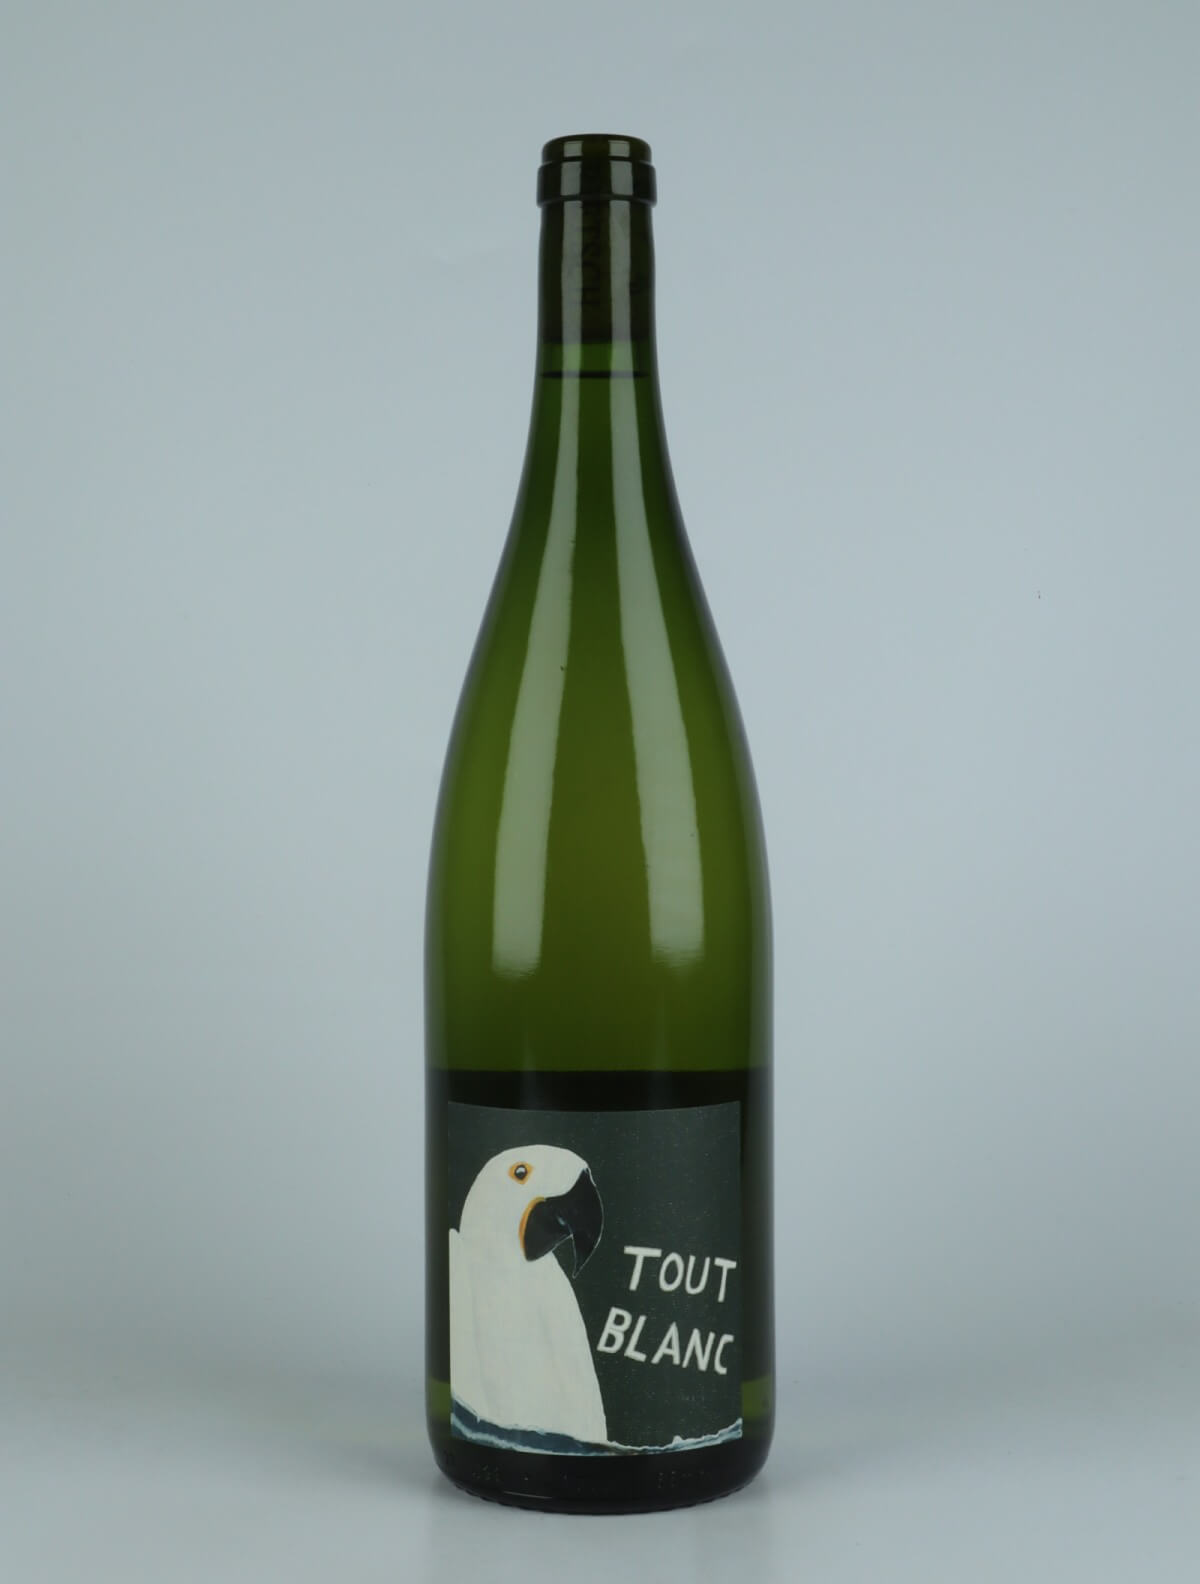 En flaske 2022 Tout Blanc - Litre Hvidvin fra Domaine Rietsch, Alsace i Frankrig